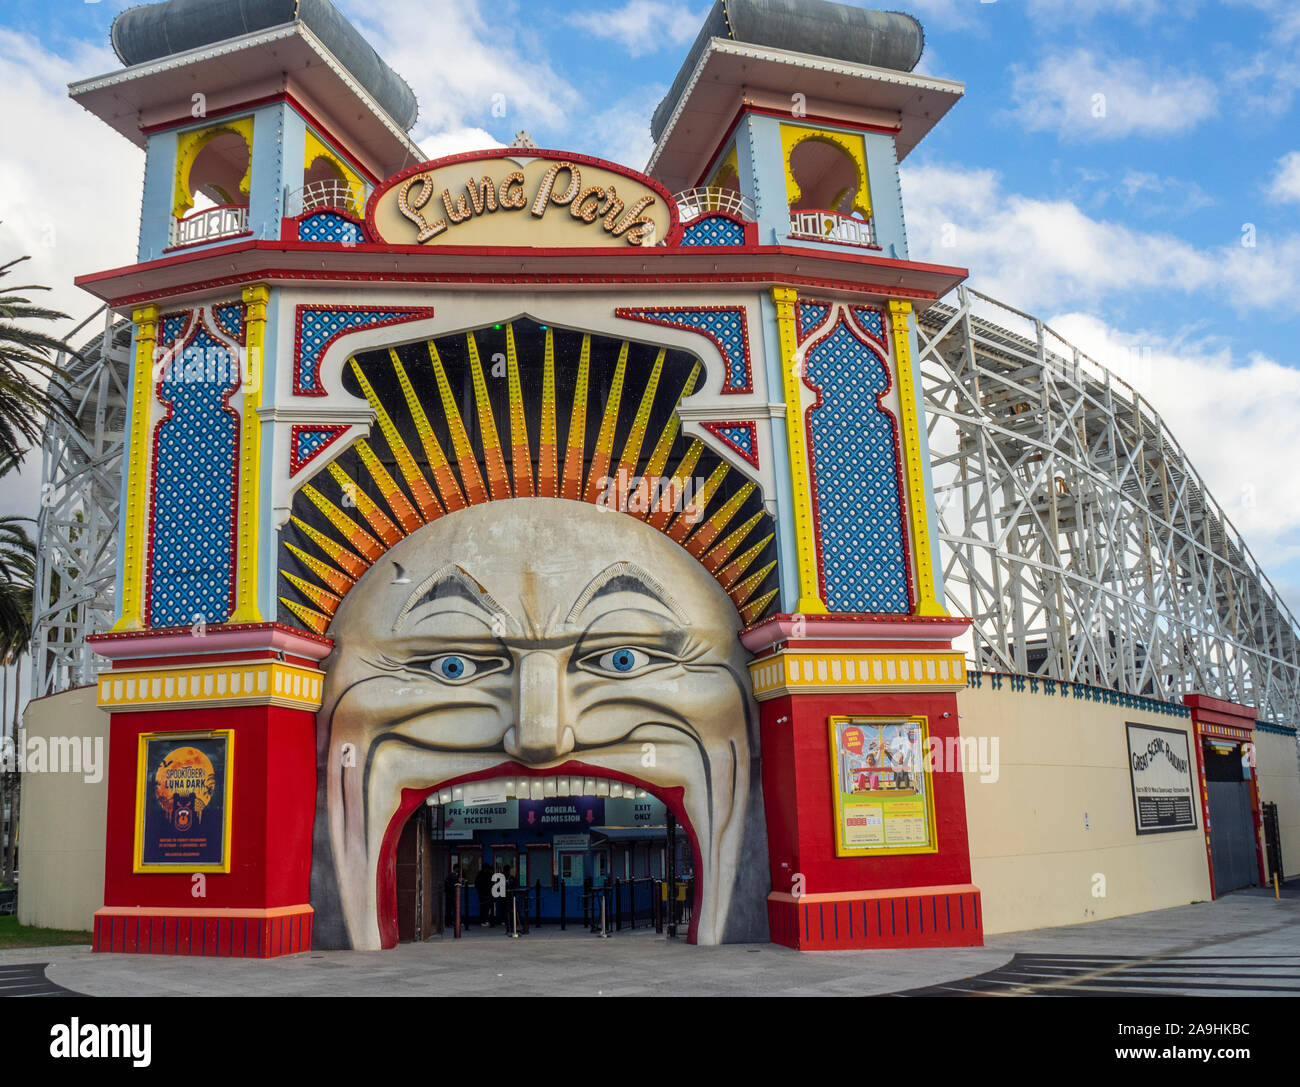 Signor iconica il volto della Luna ingresso al Luna Park parco divertimenti fiera in St Kilda Melbourne Victoria Australia. Foto Stock